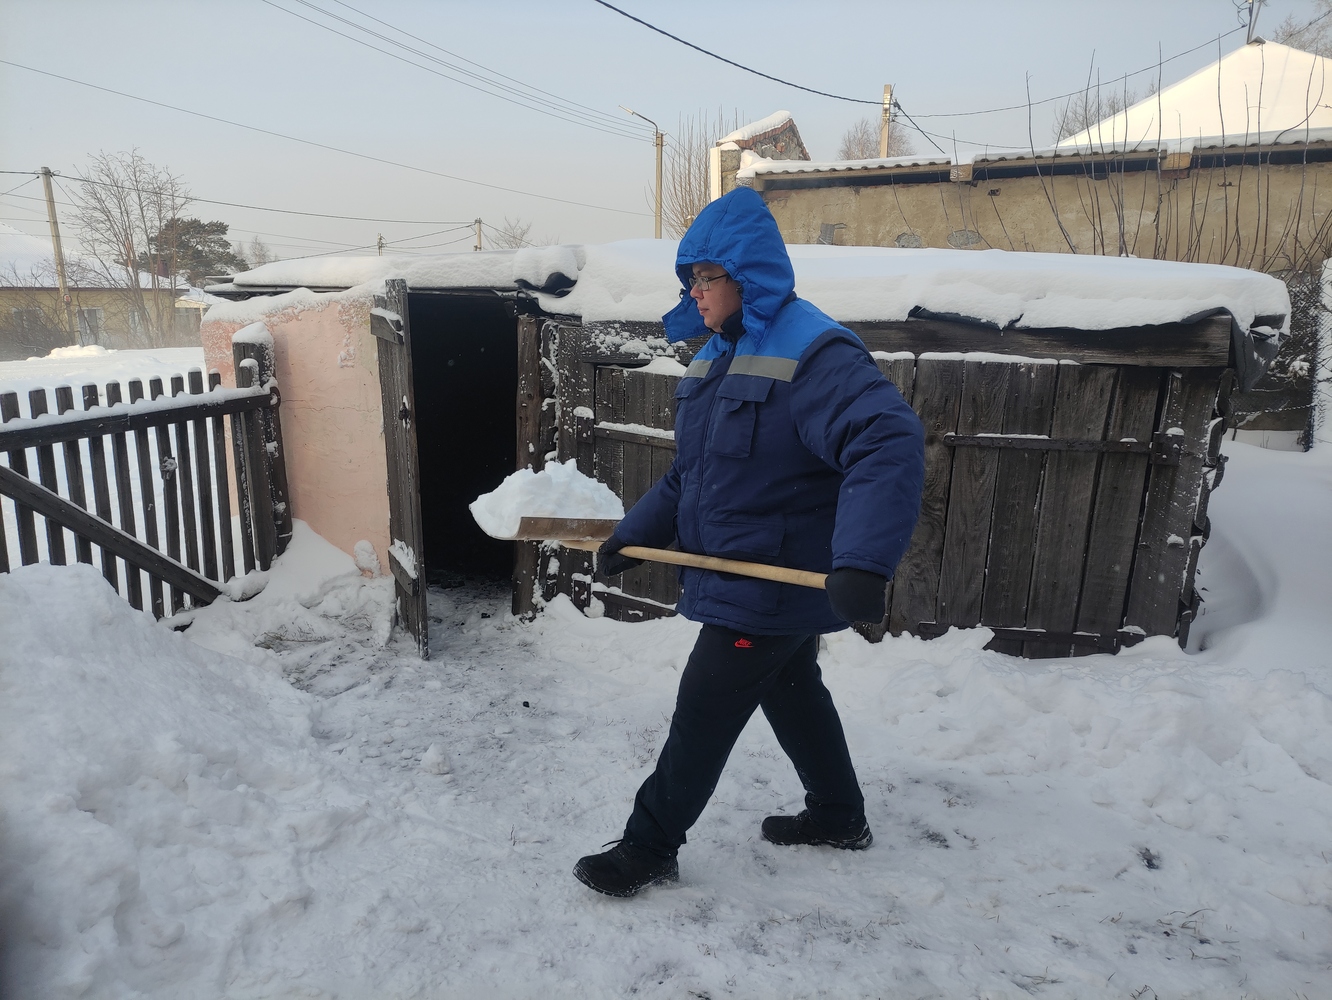 Специалисты разреза Пермяковский помогли труженице тыла очистить двор от снега. Стройсервис